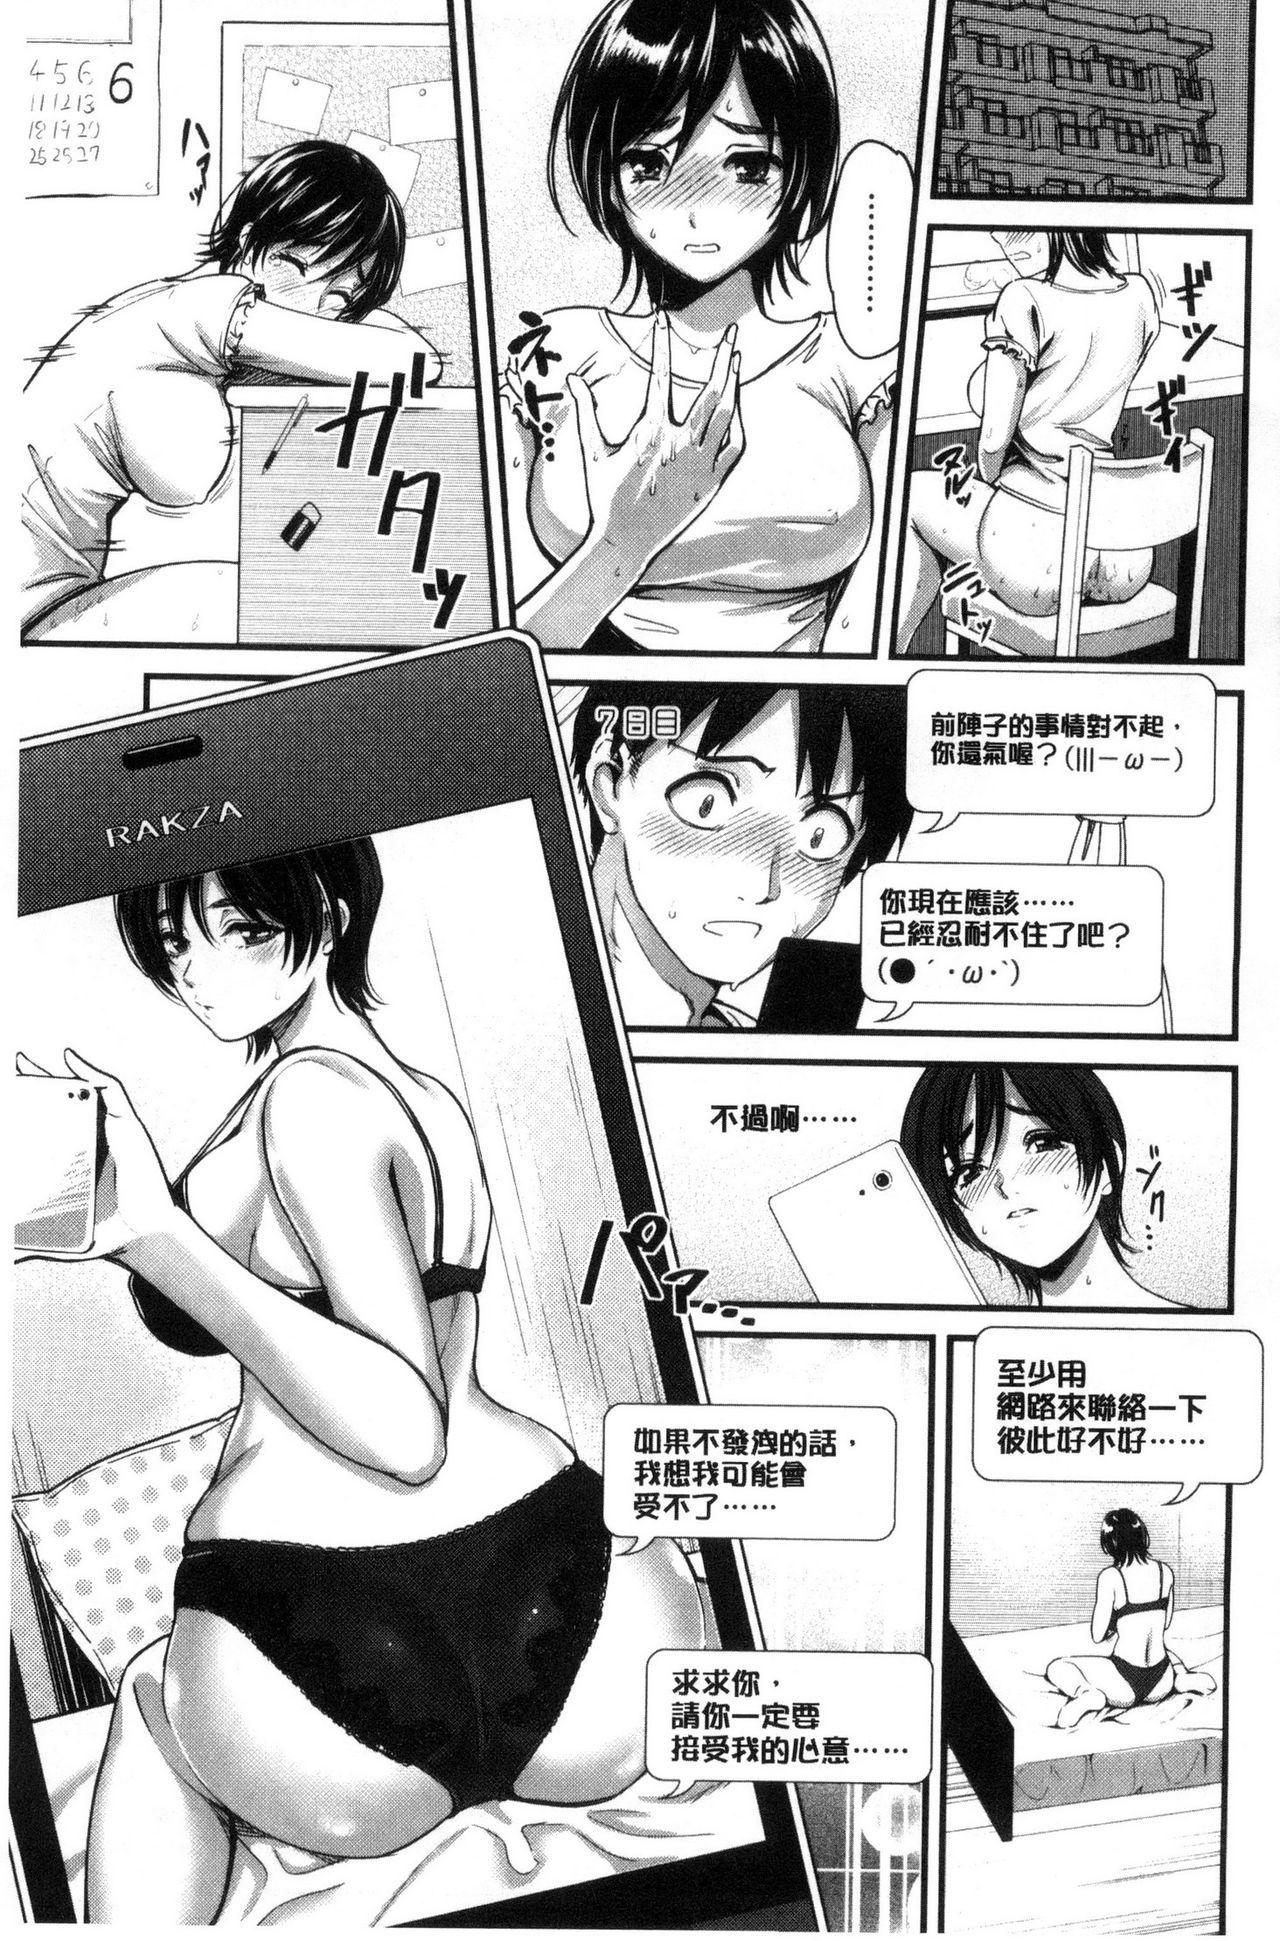 Seifuku no Mama Aishinasai! - Love in school uniform 8